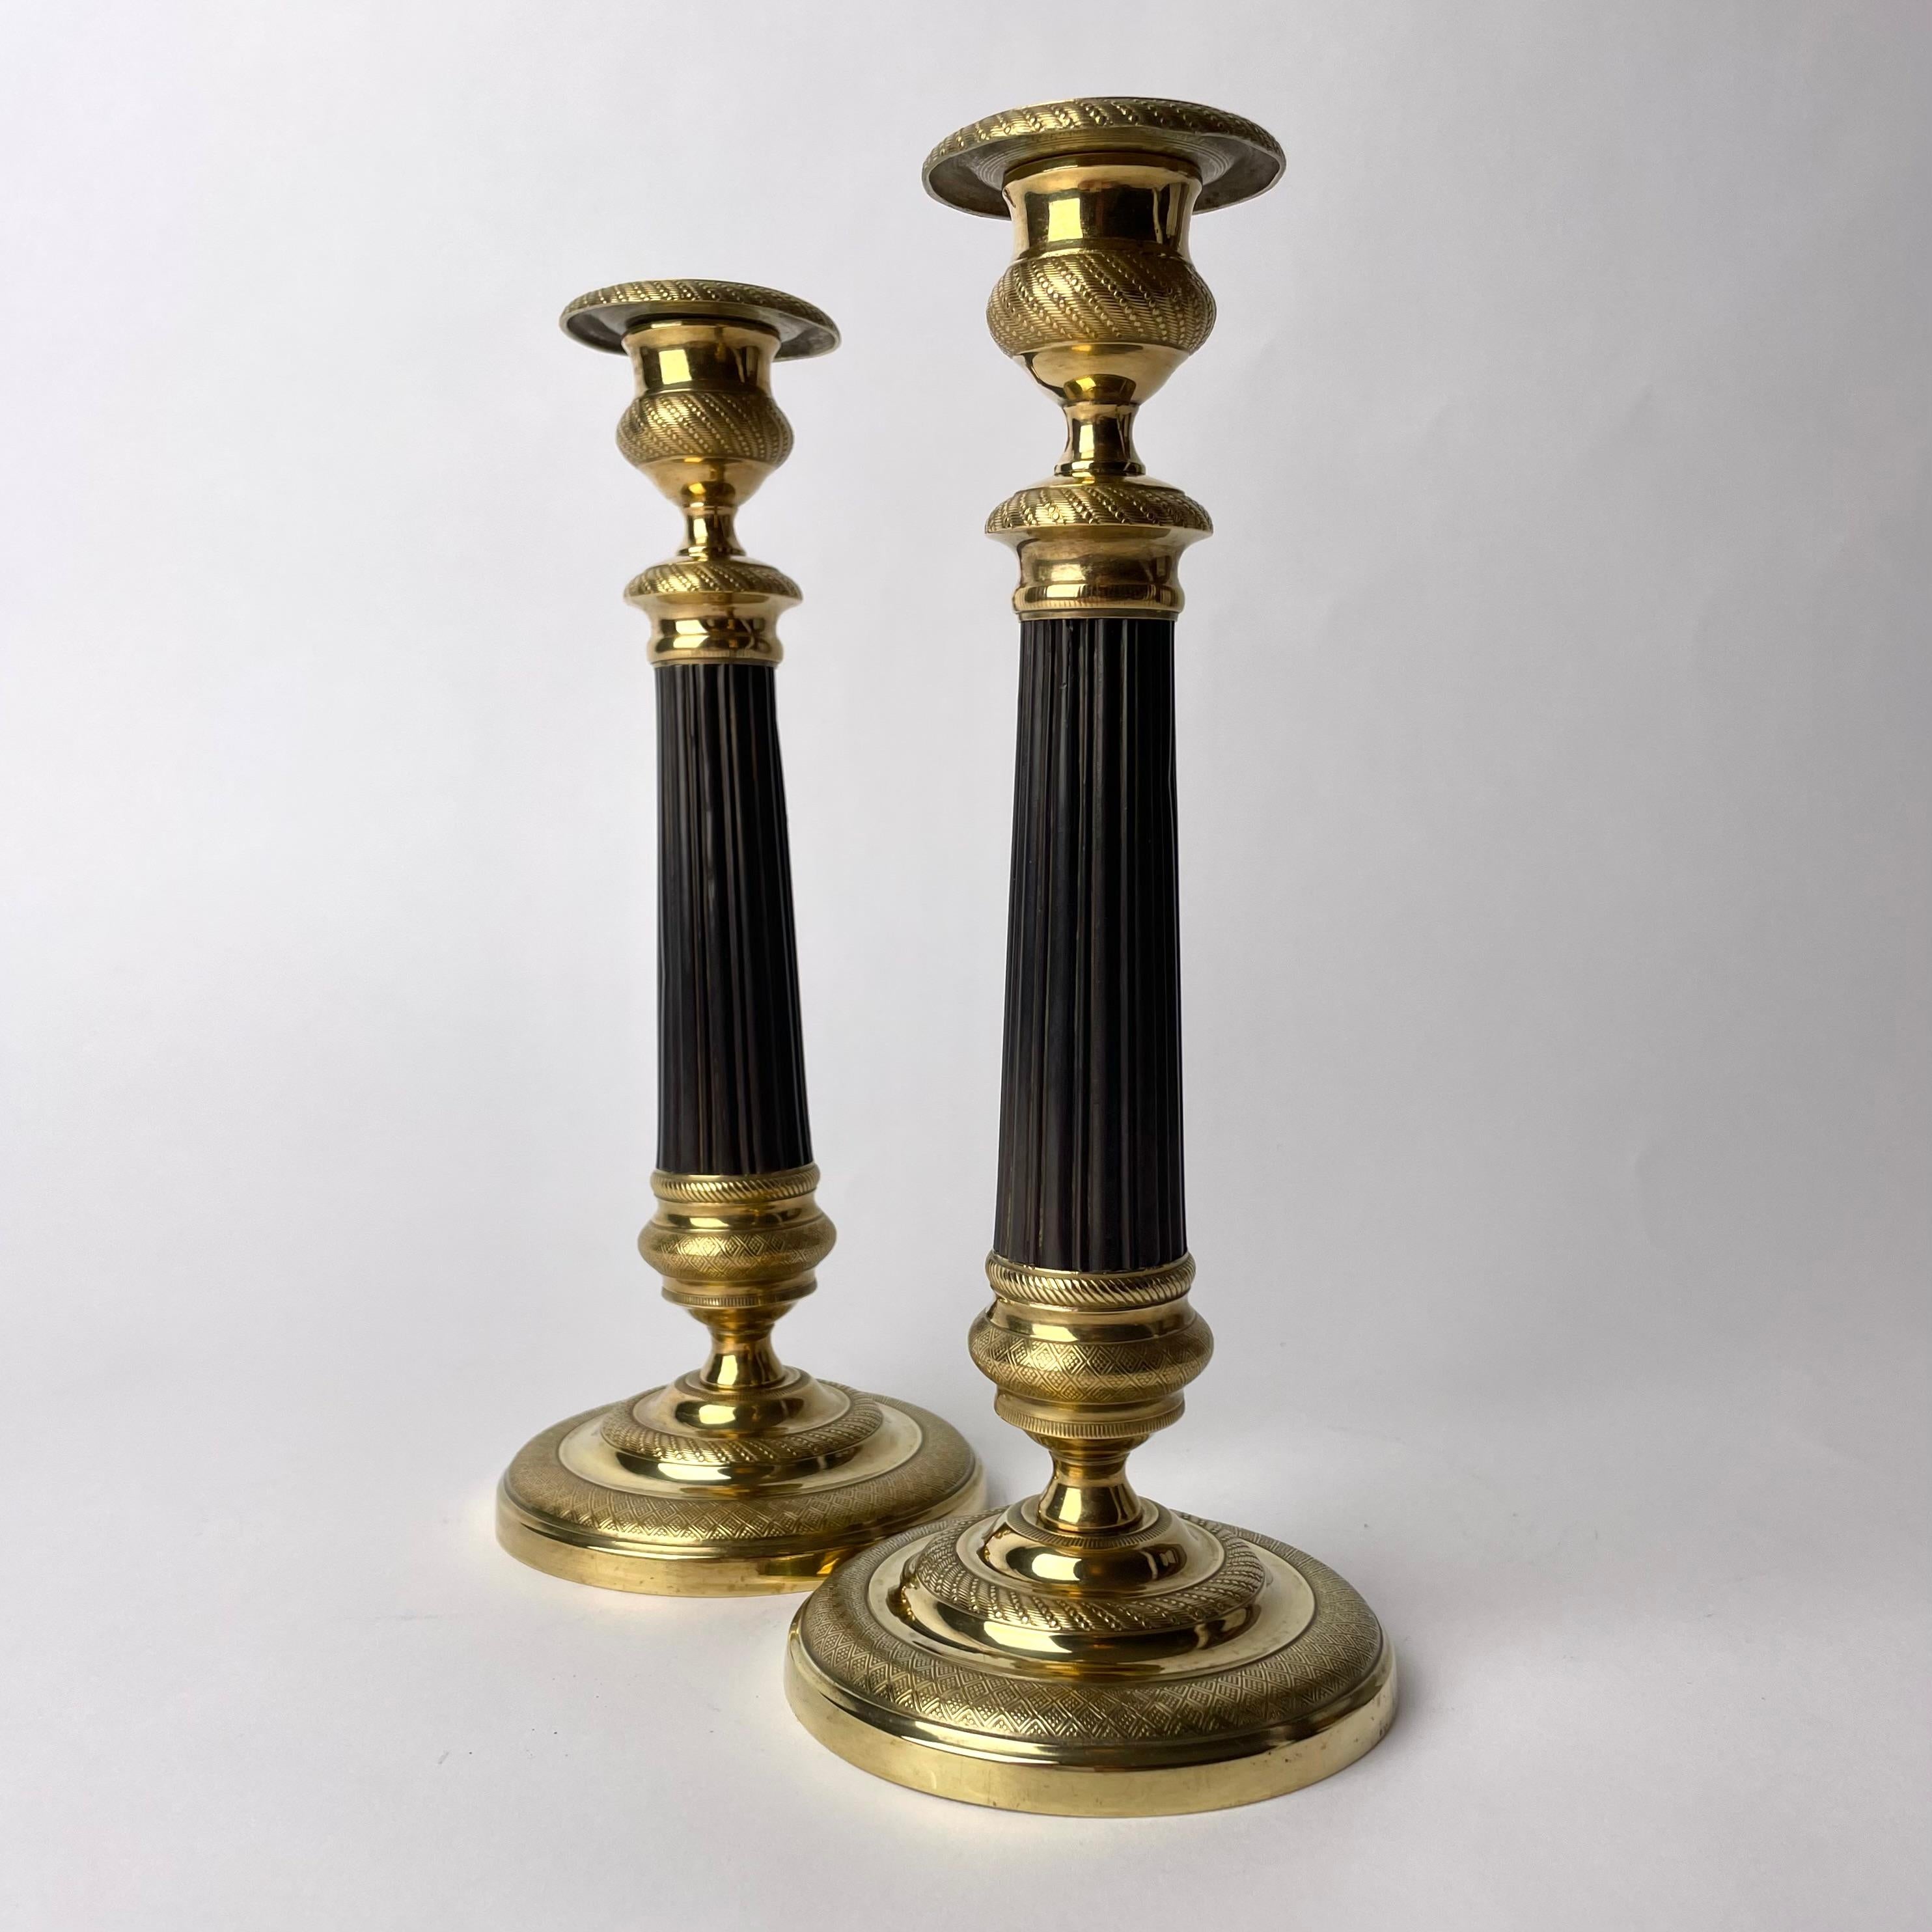 Wunderschönes Paar Empire-Kerzenleuchter aus vergoldeter und dunkel patinierter Bronze. Hergestellt in Frankreich in den 1820er Jahren. Sehr zeitgemäßes Design.

Abnutzung entsprechend dem Alter und dem Gebrauch 